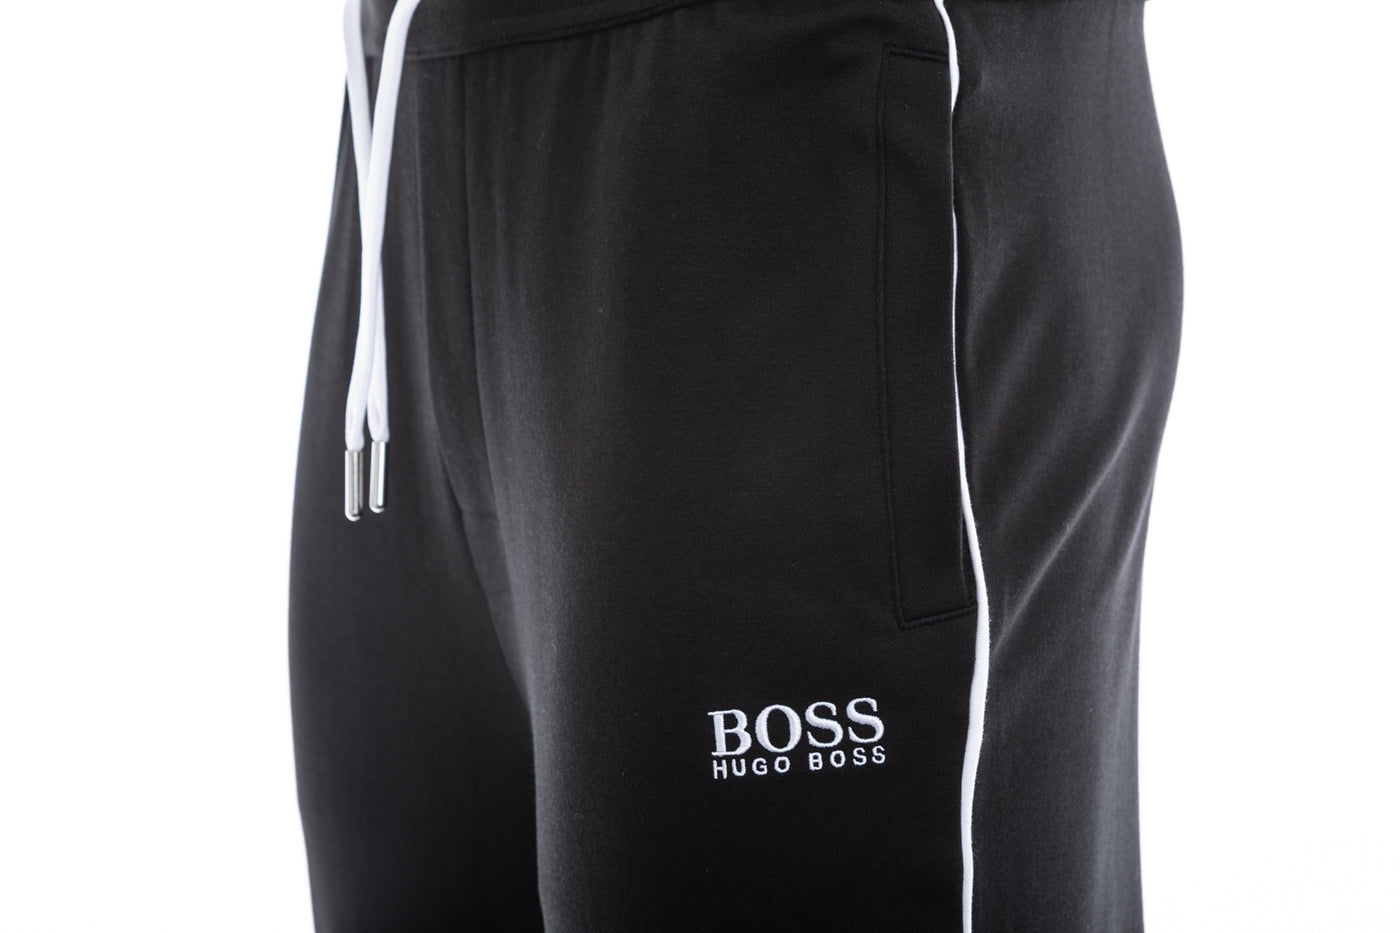 BOSS Tracksuit Pant Sweatpant in Black